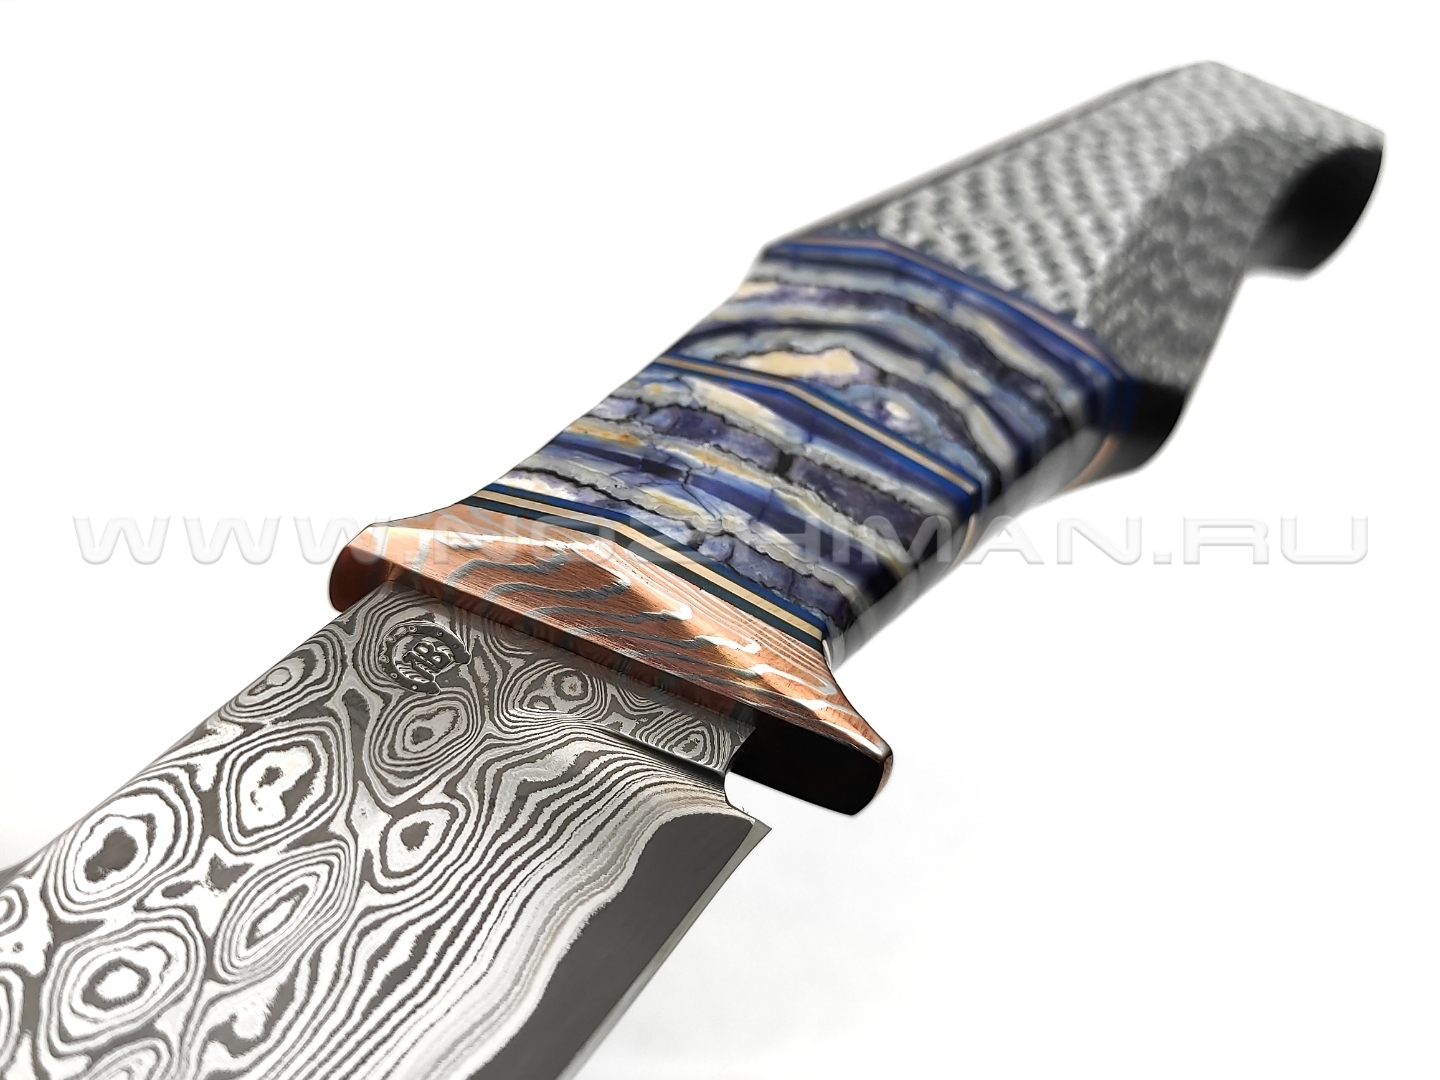 Кузница Васильева нож НЛВ135 ламинат CPM Rex 121, рукоять Silver Twill, мокумэ-ганэ, зуб мамонта